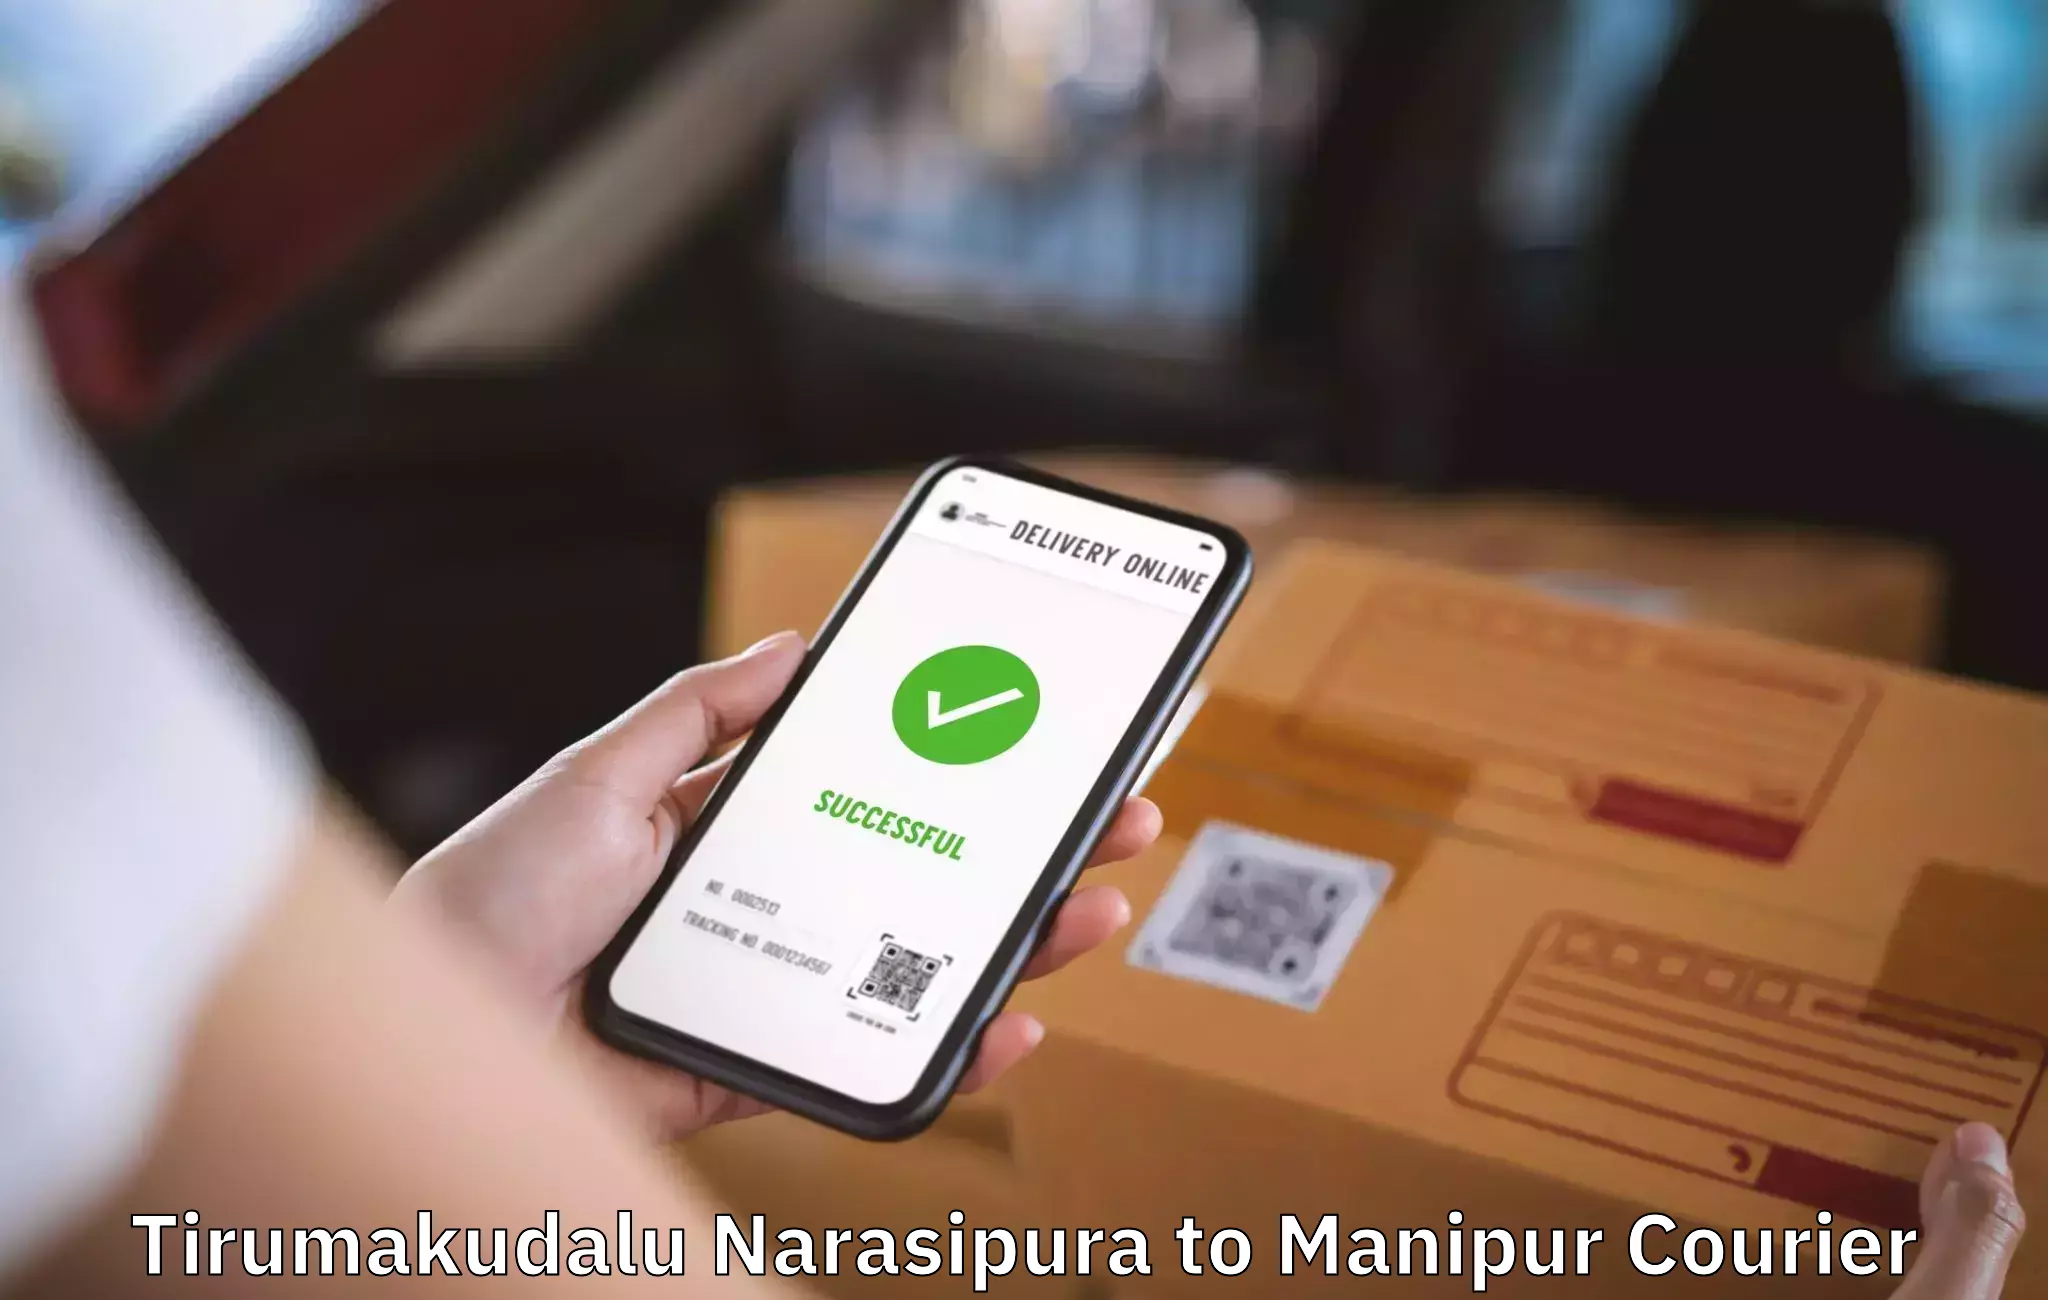 Personalized furniture moving in Tirumakudalu Narasipura to Manipur